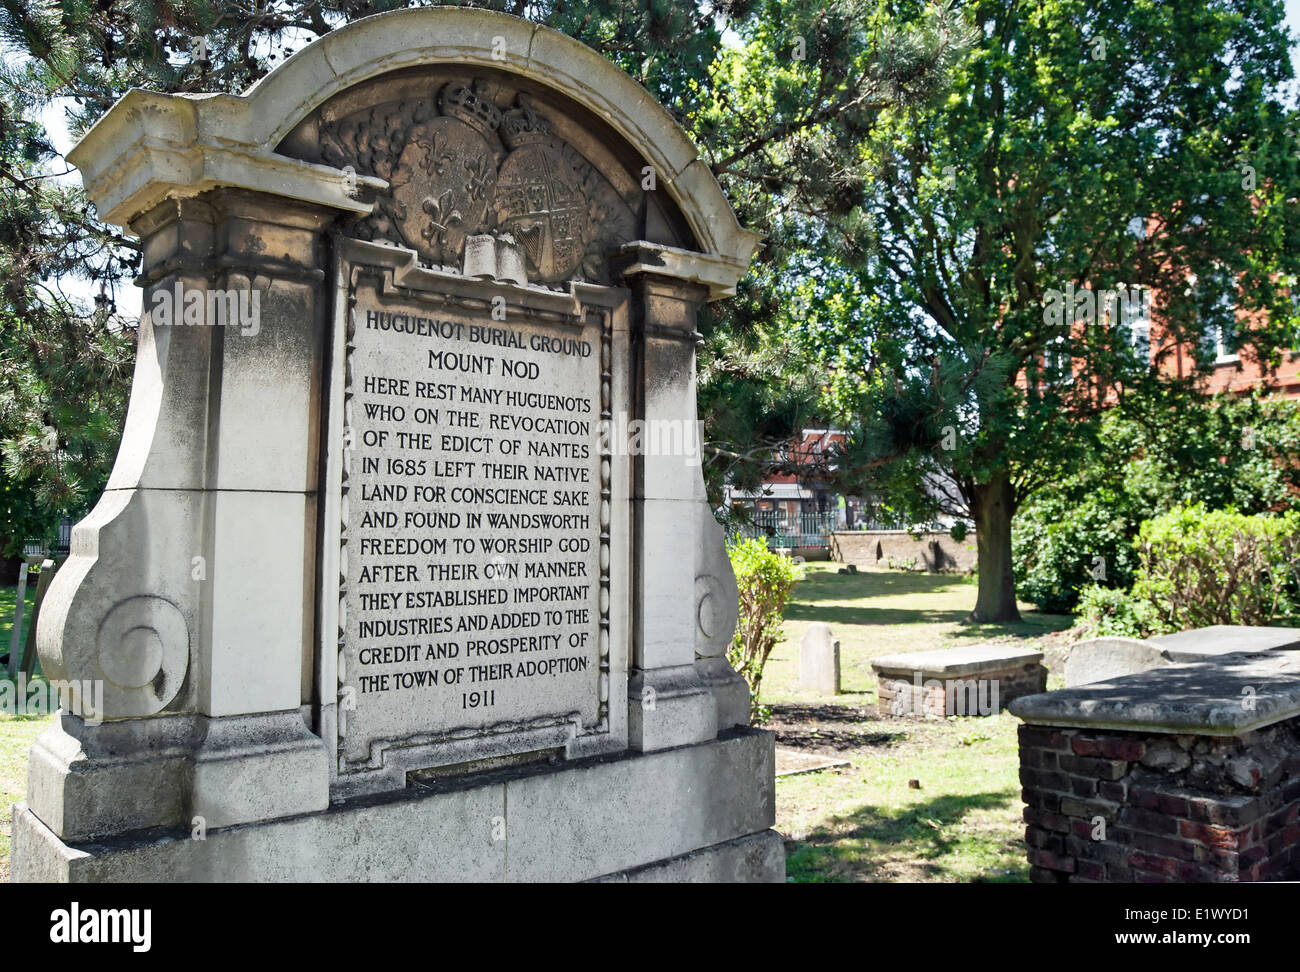 Monument au cimetière huguenot, mont adi, Wandsworth, Londres, Angleterre Banque D'Images